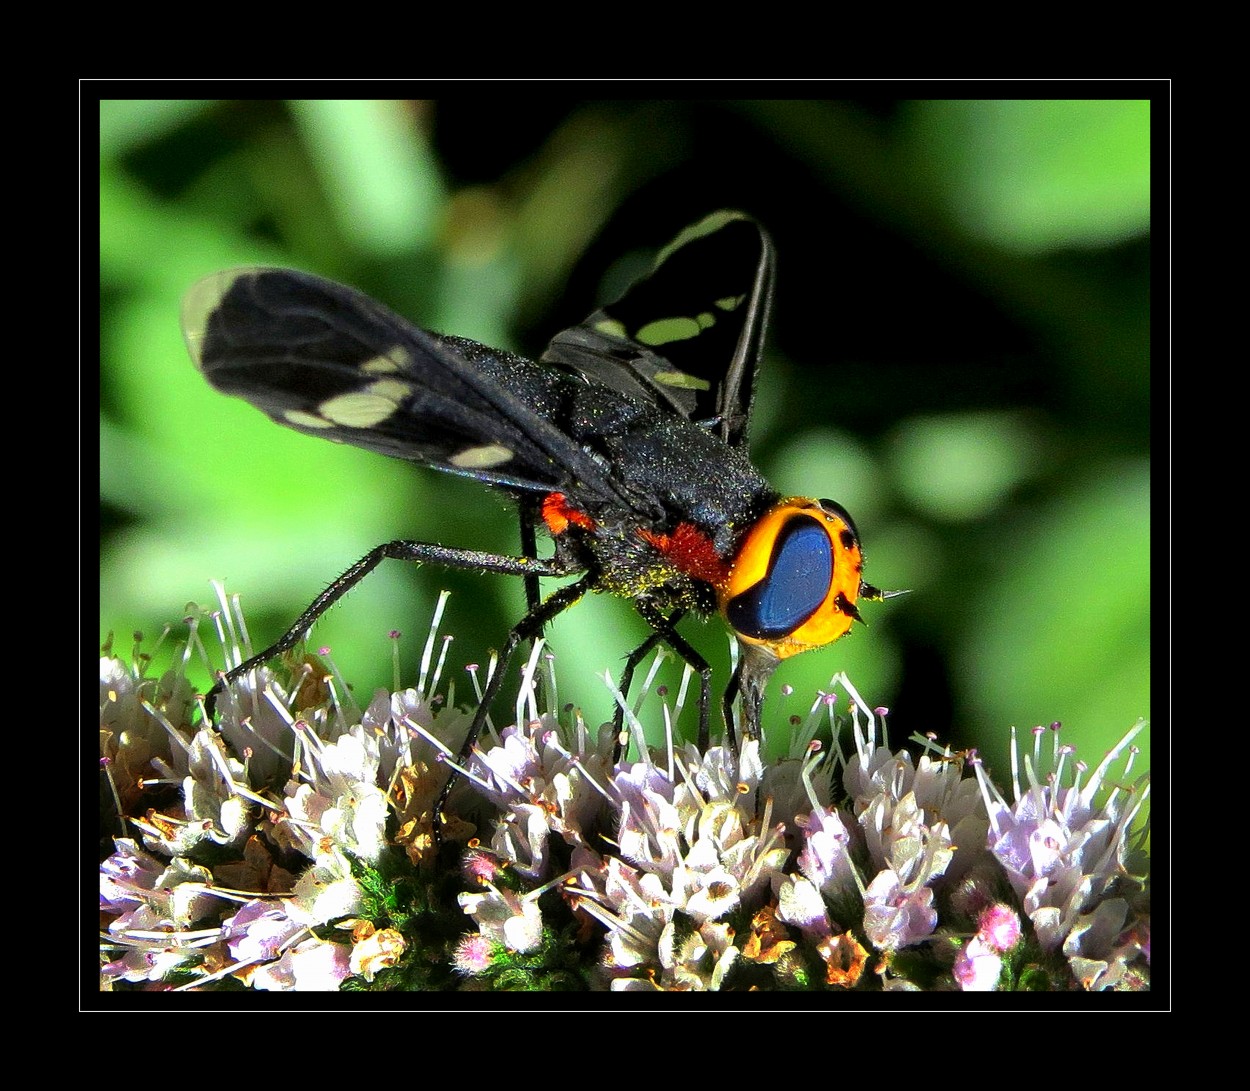 "Una mosca que parece de juguete" de Alejandro del Valle